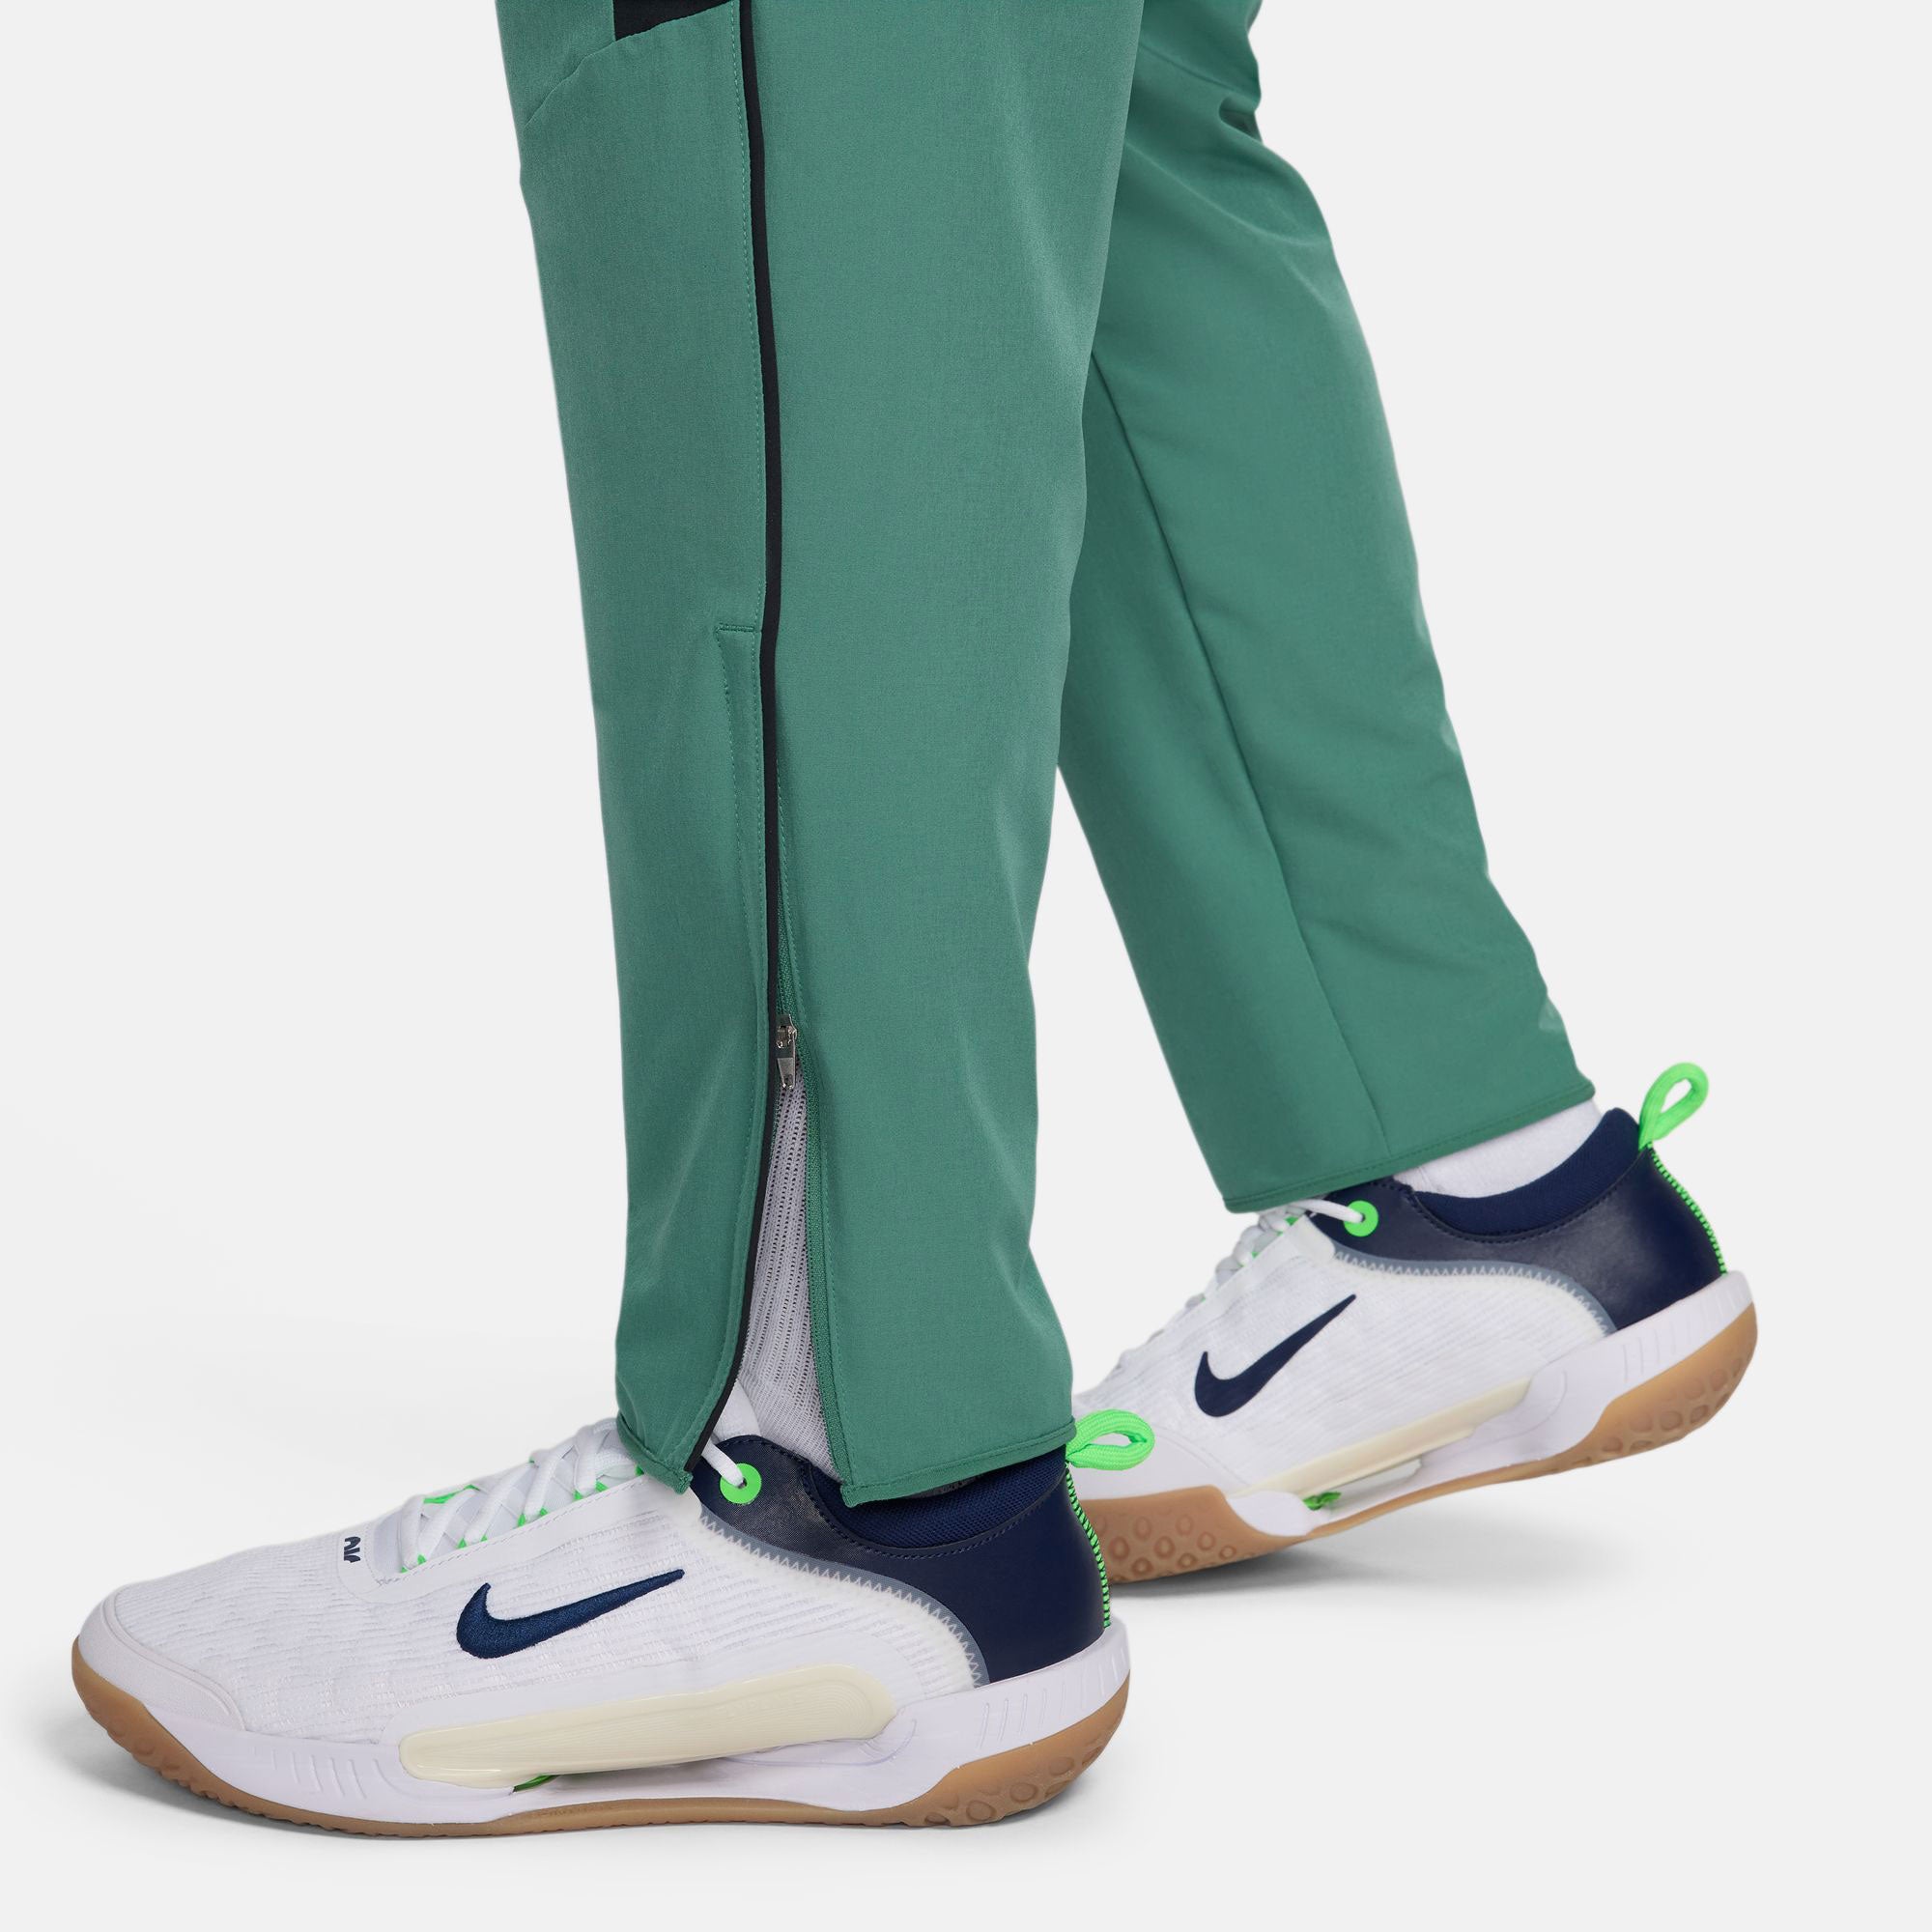 NikeCourt Advantage Men's Dri-FIT Tennis Pants - Green (5)